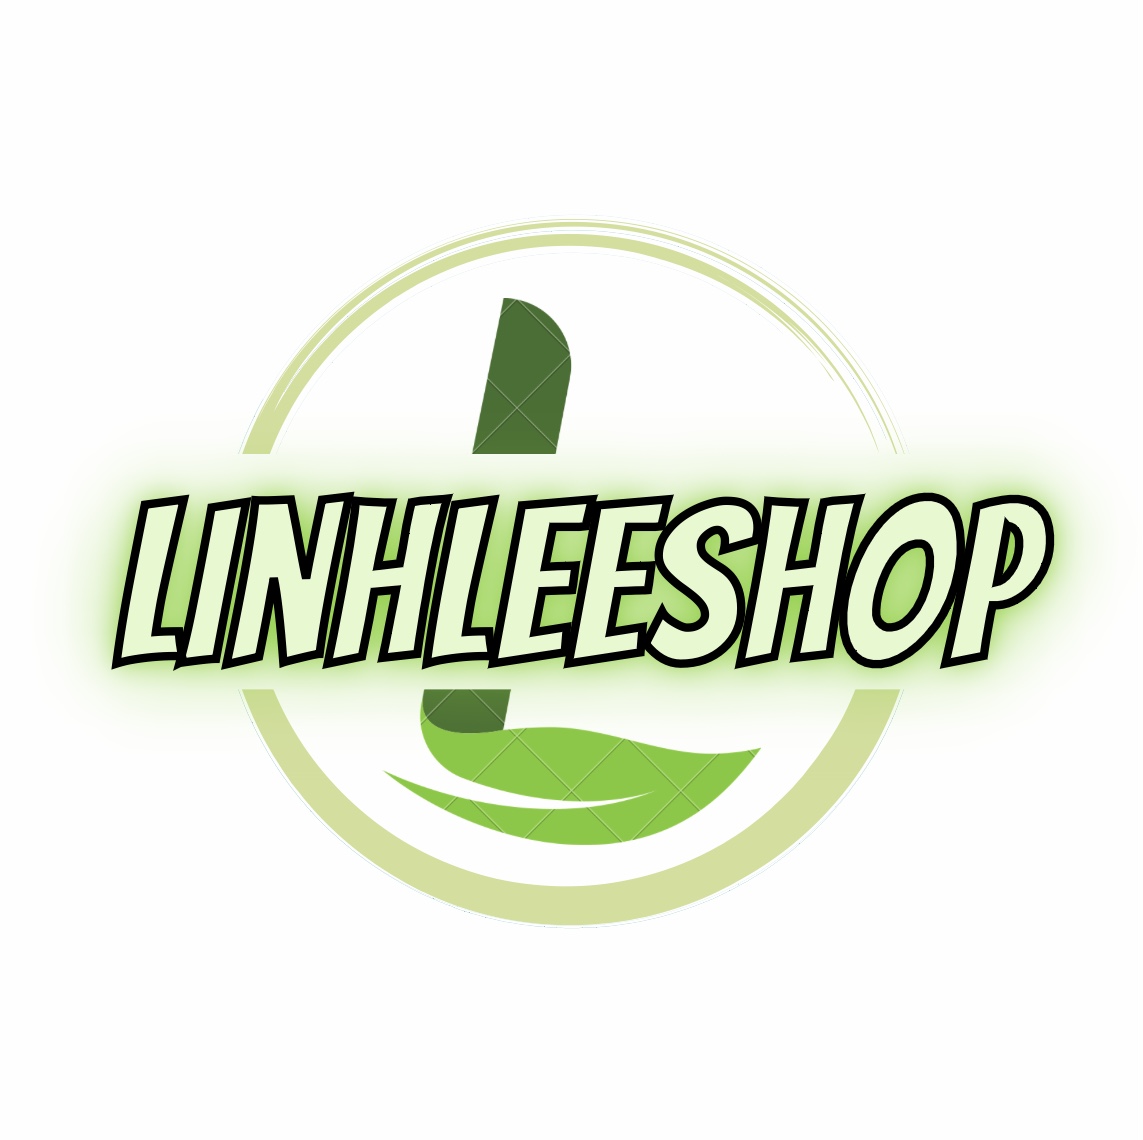 LinhLeeShop